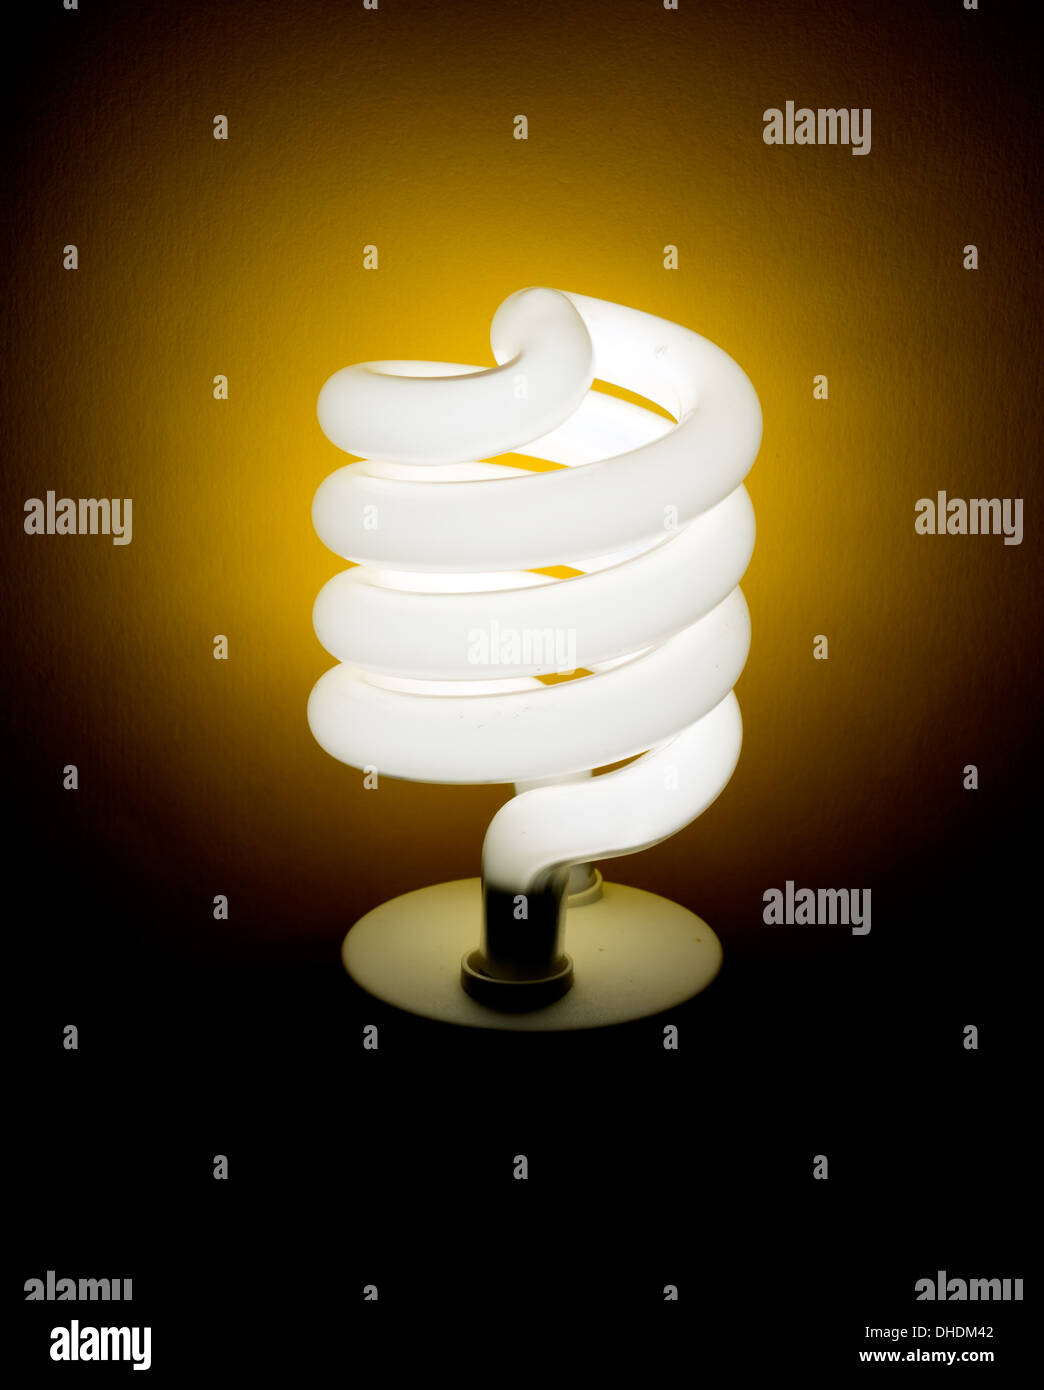 Lampadina della luce di illuminazione di sfondo giallo Foto Stock